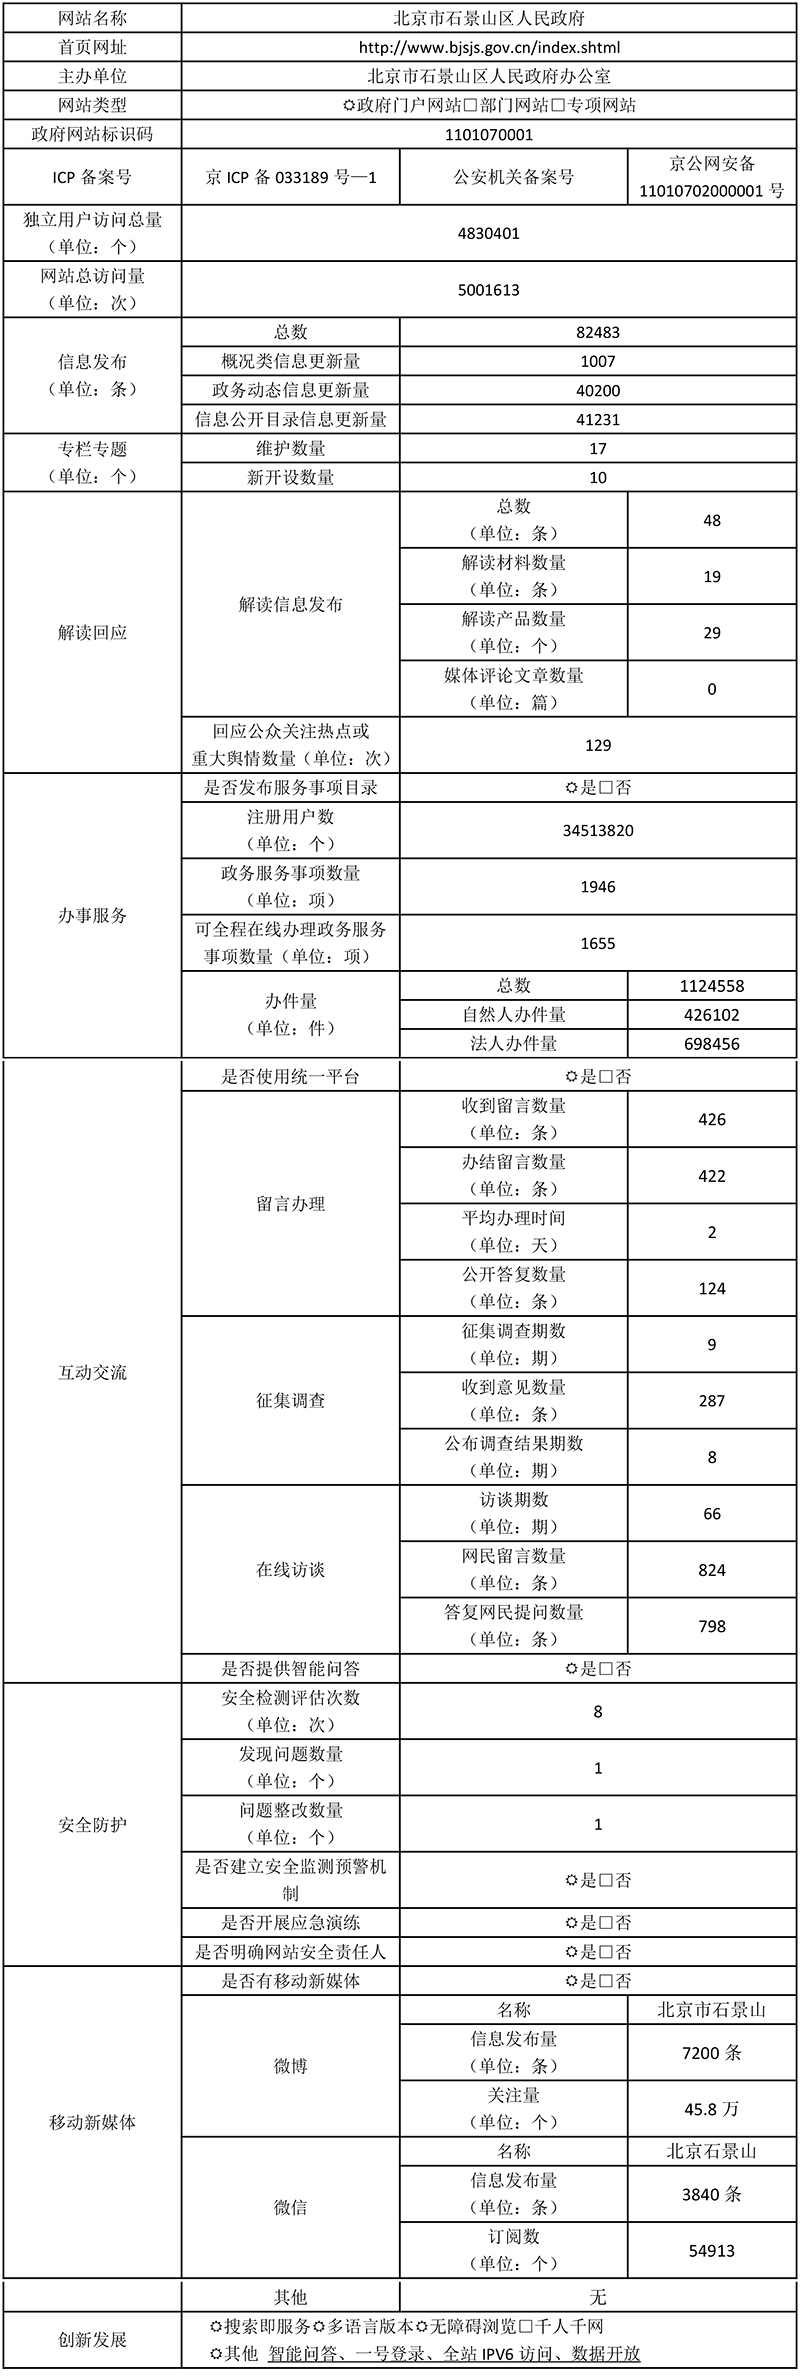 北京市石景山区人民政府2021年政府网站年度工作报表